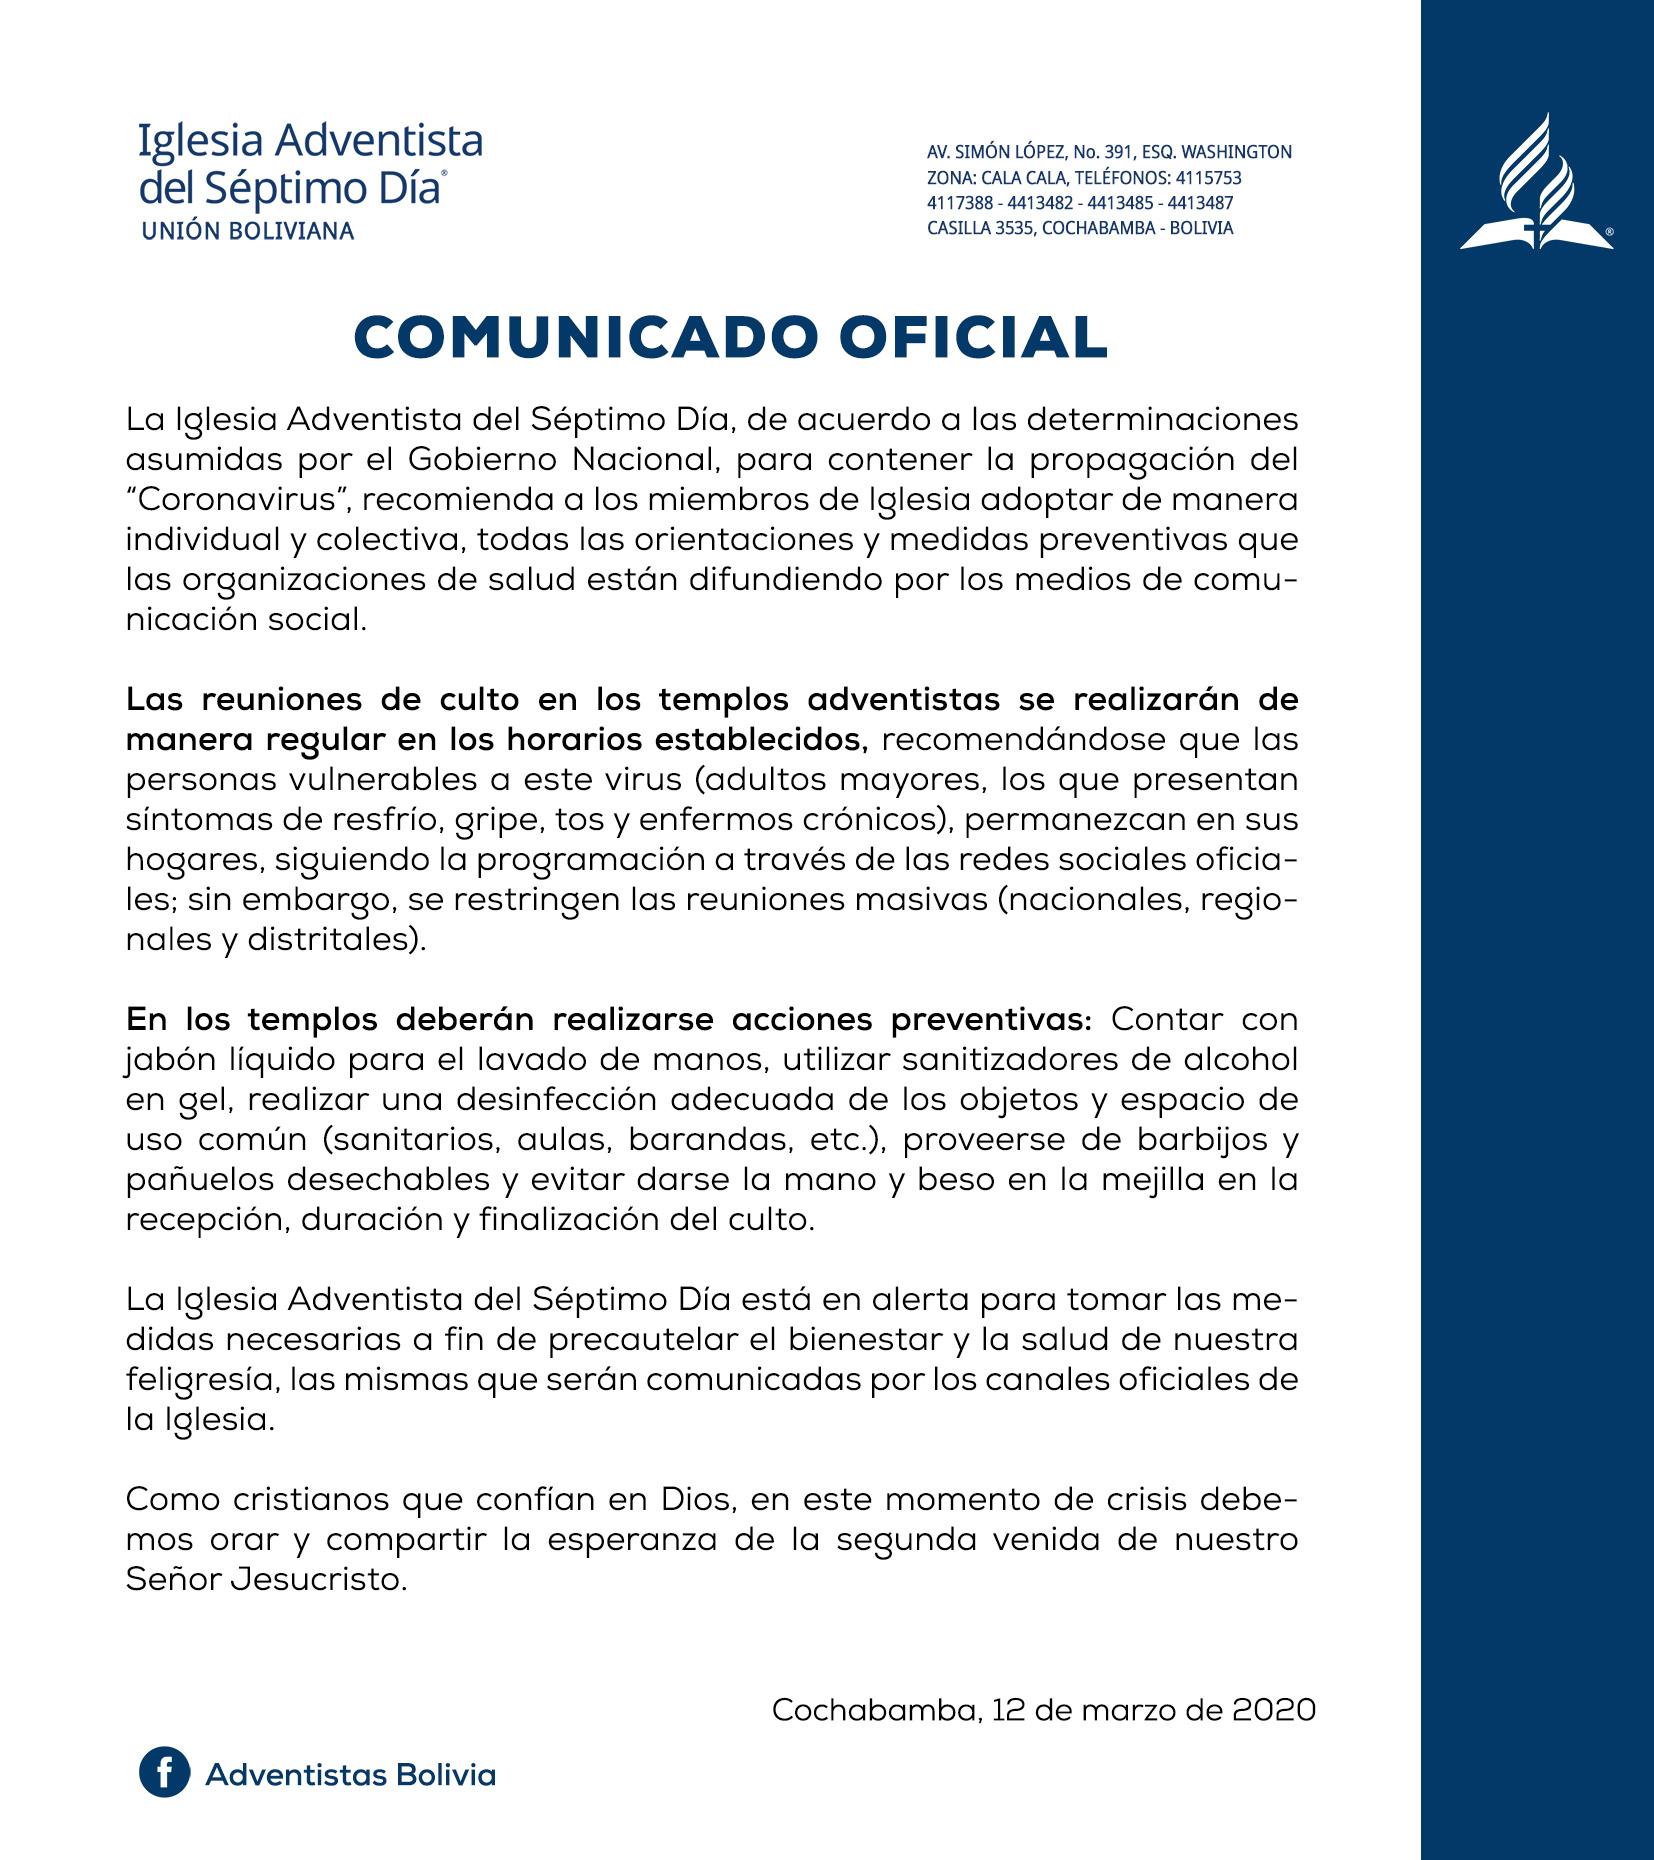 Iglesia Adventista en Bolivia emite comunicado oficial debido al  coronavirus - Noticias - Adventistas